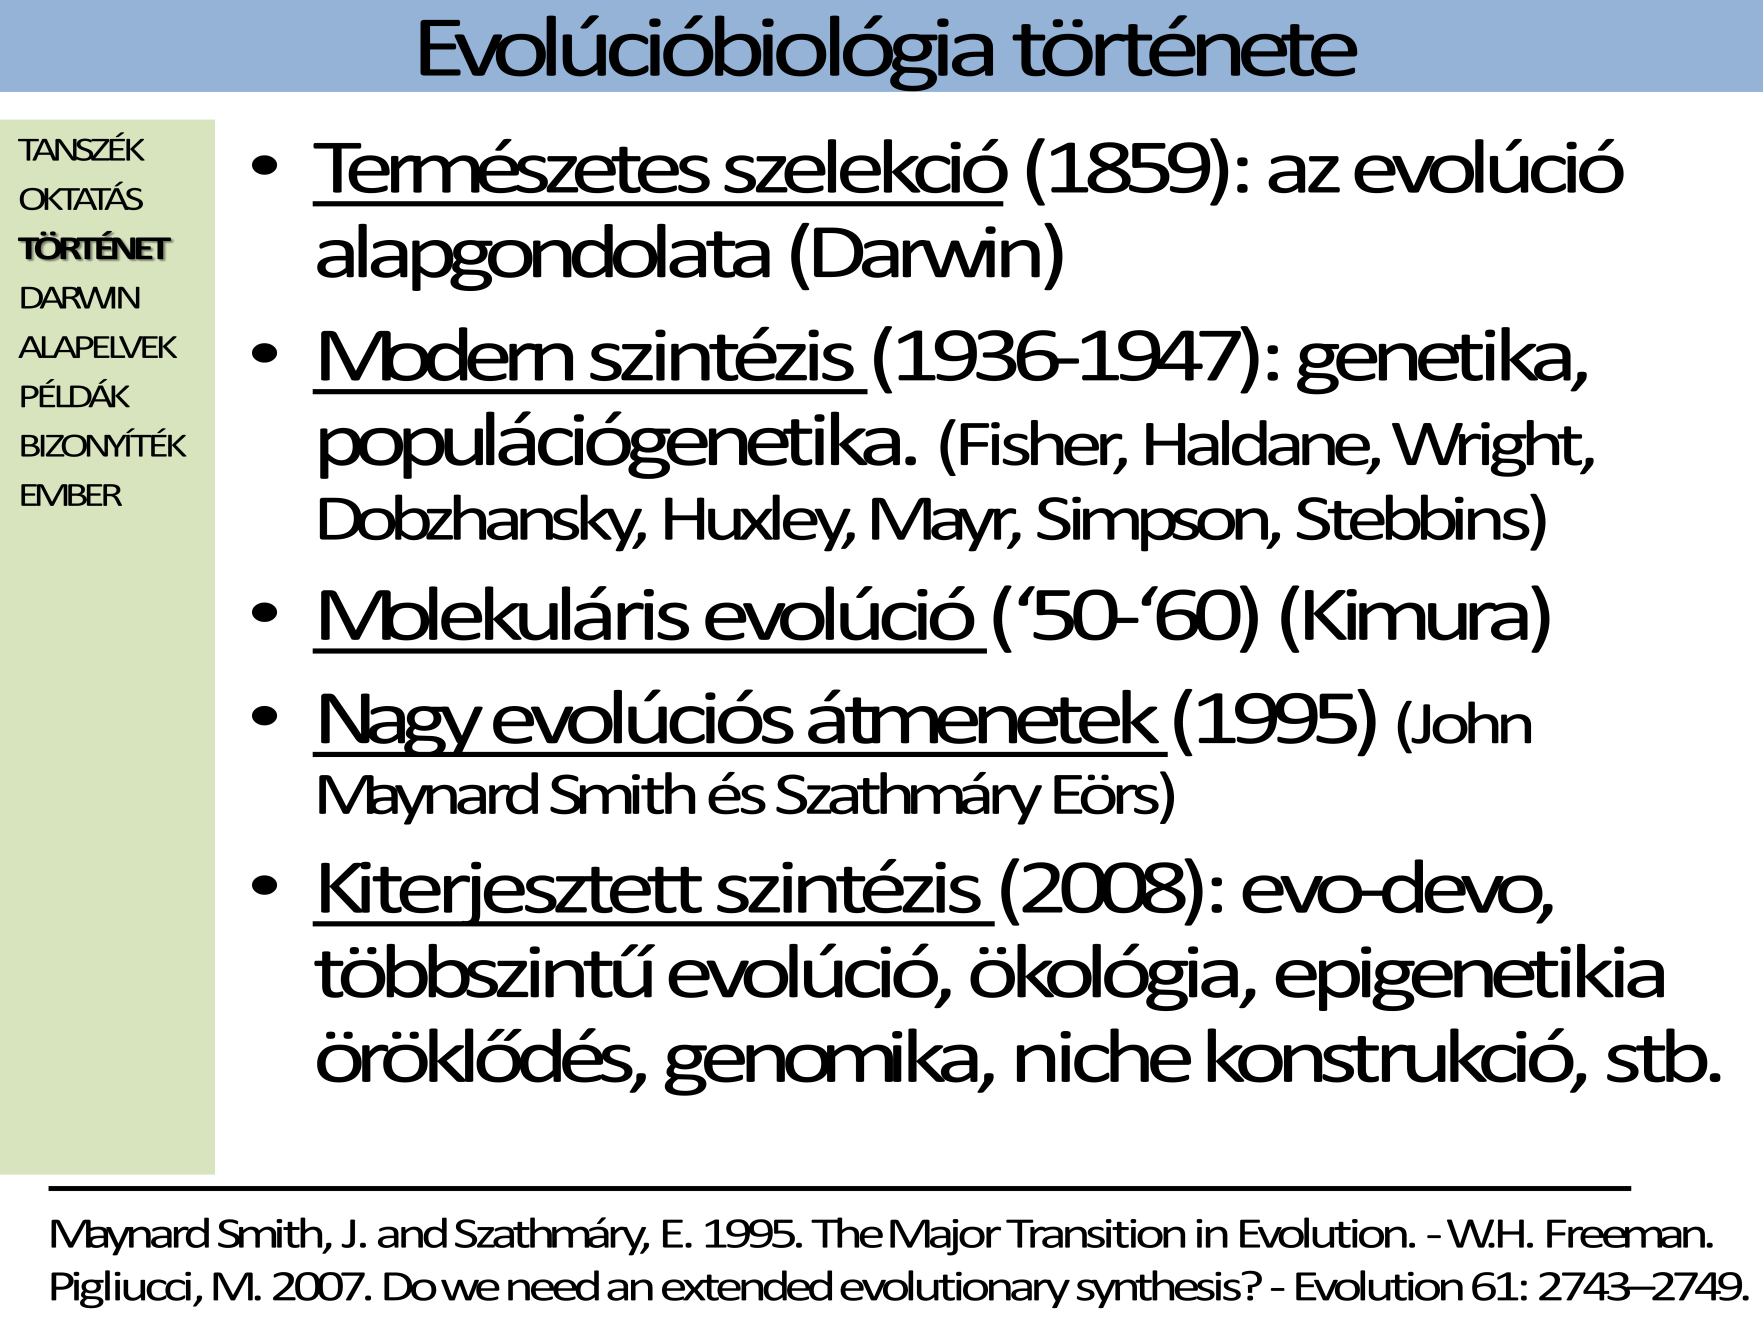 Az evolúcióbiológia története szempontjából a legfontosabbnak azt tartom, hogy miként terjedt ki az evolúciós gondolat a biológia